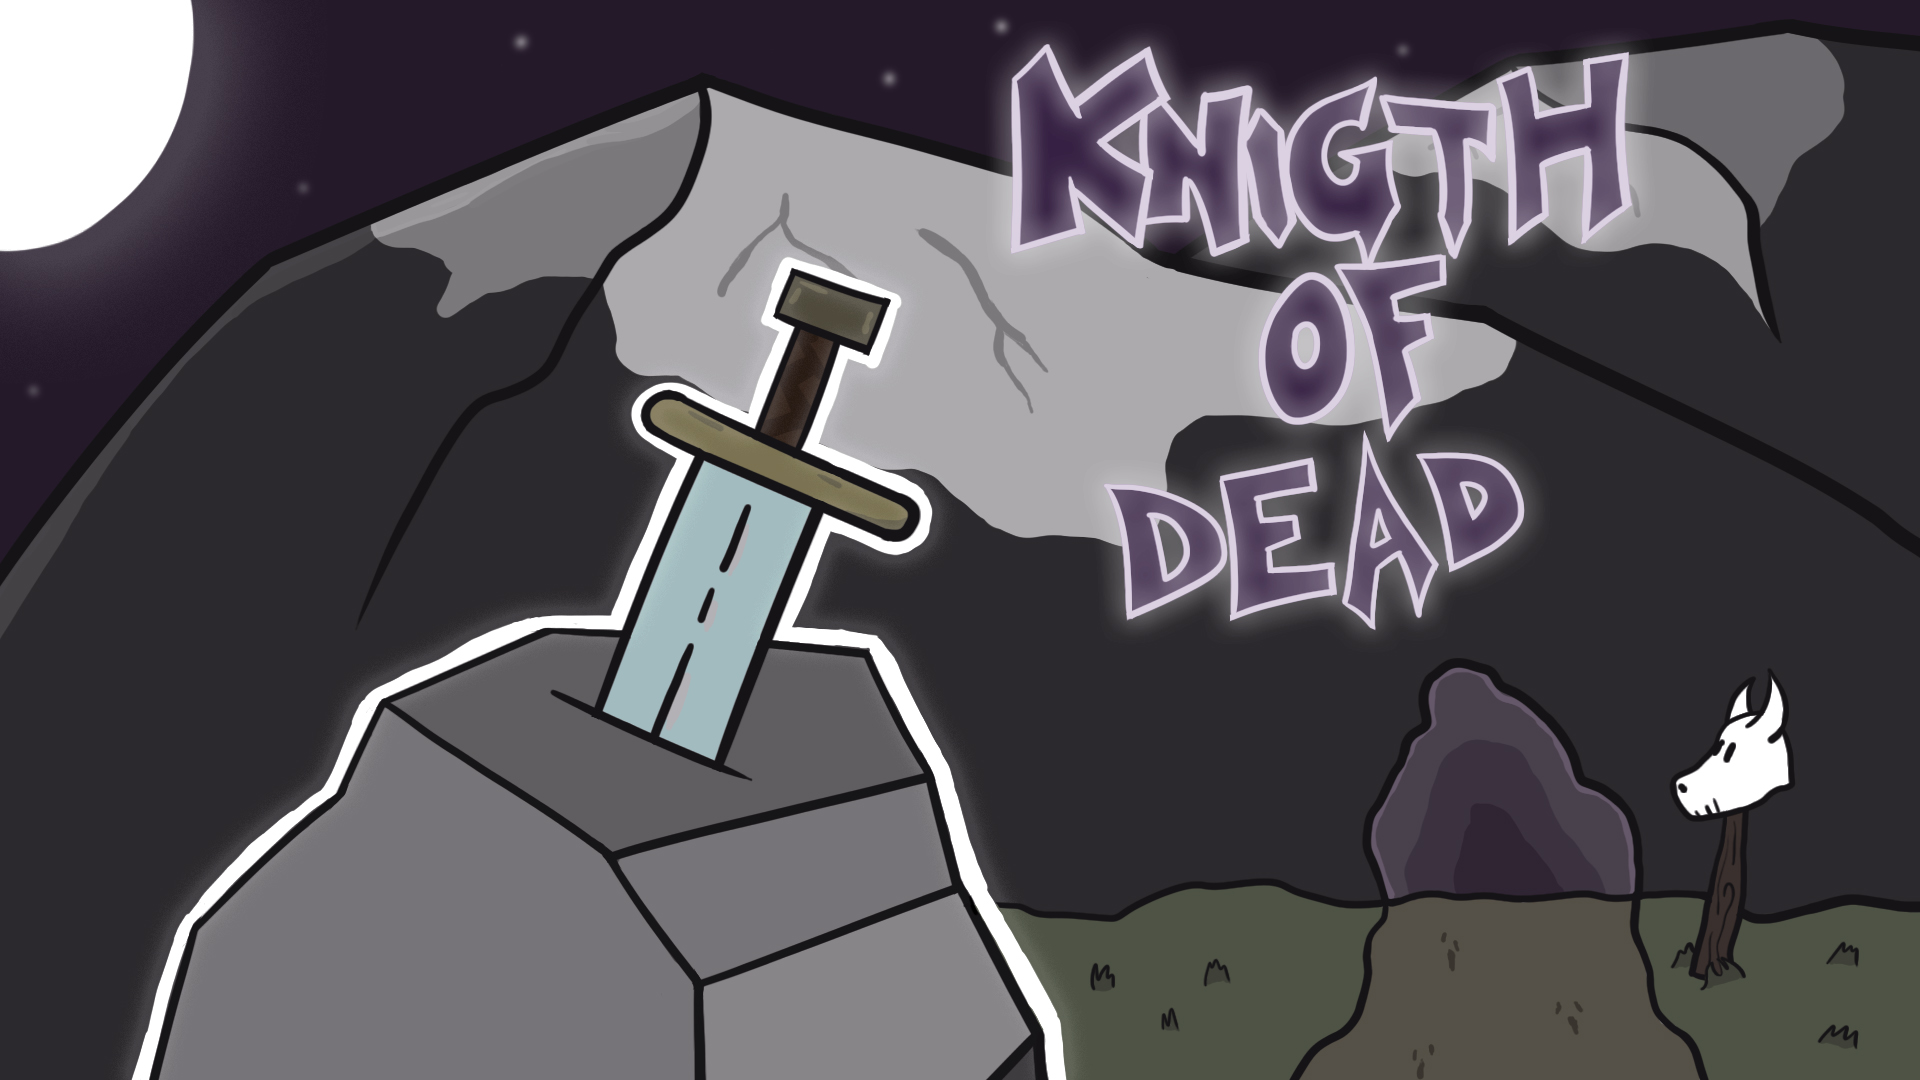 Knight of dead